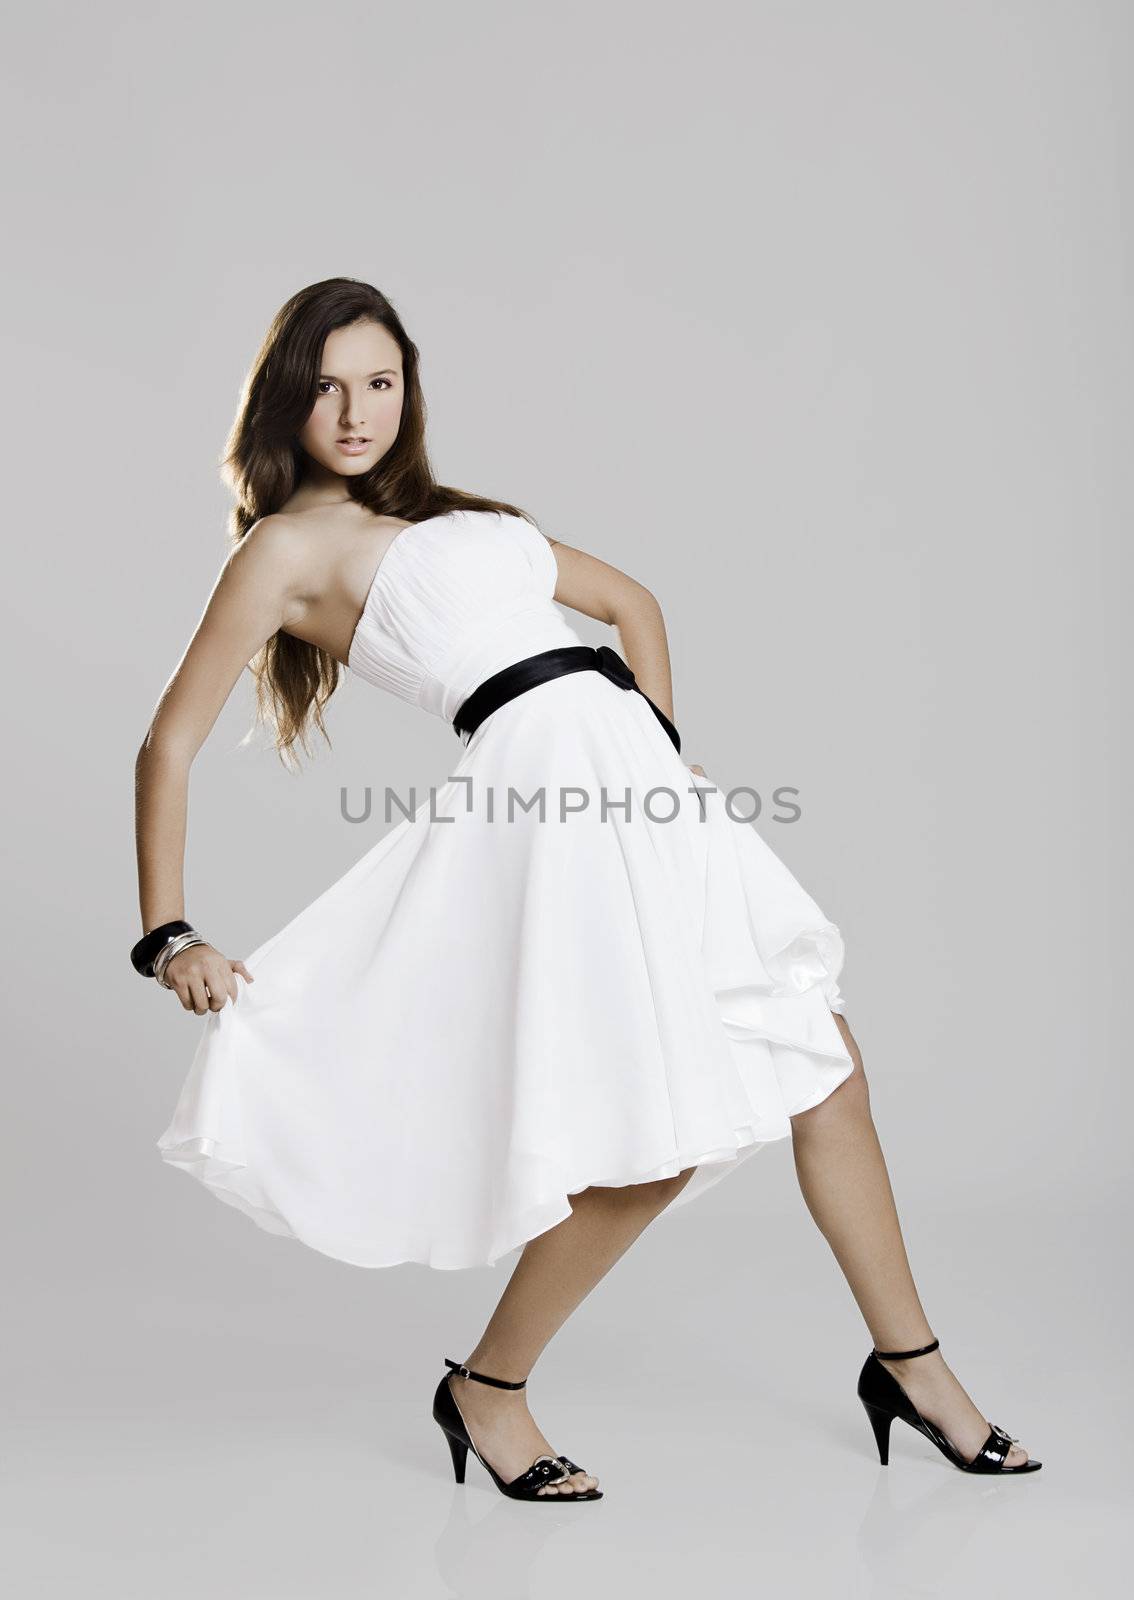 Beautiful and sexy woman wearing a wonderful white dress